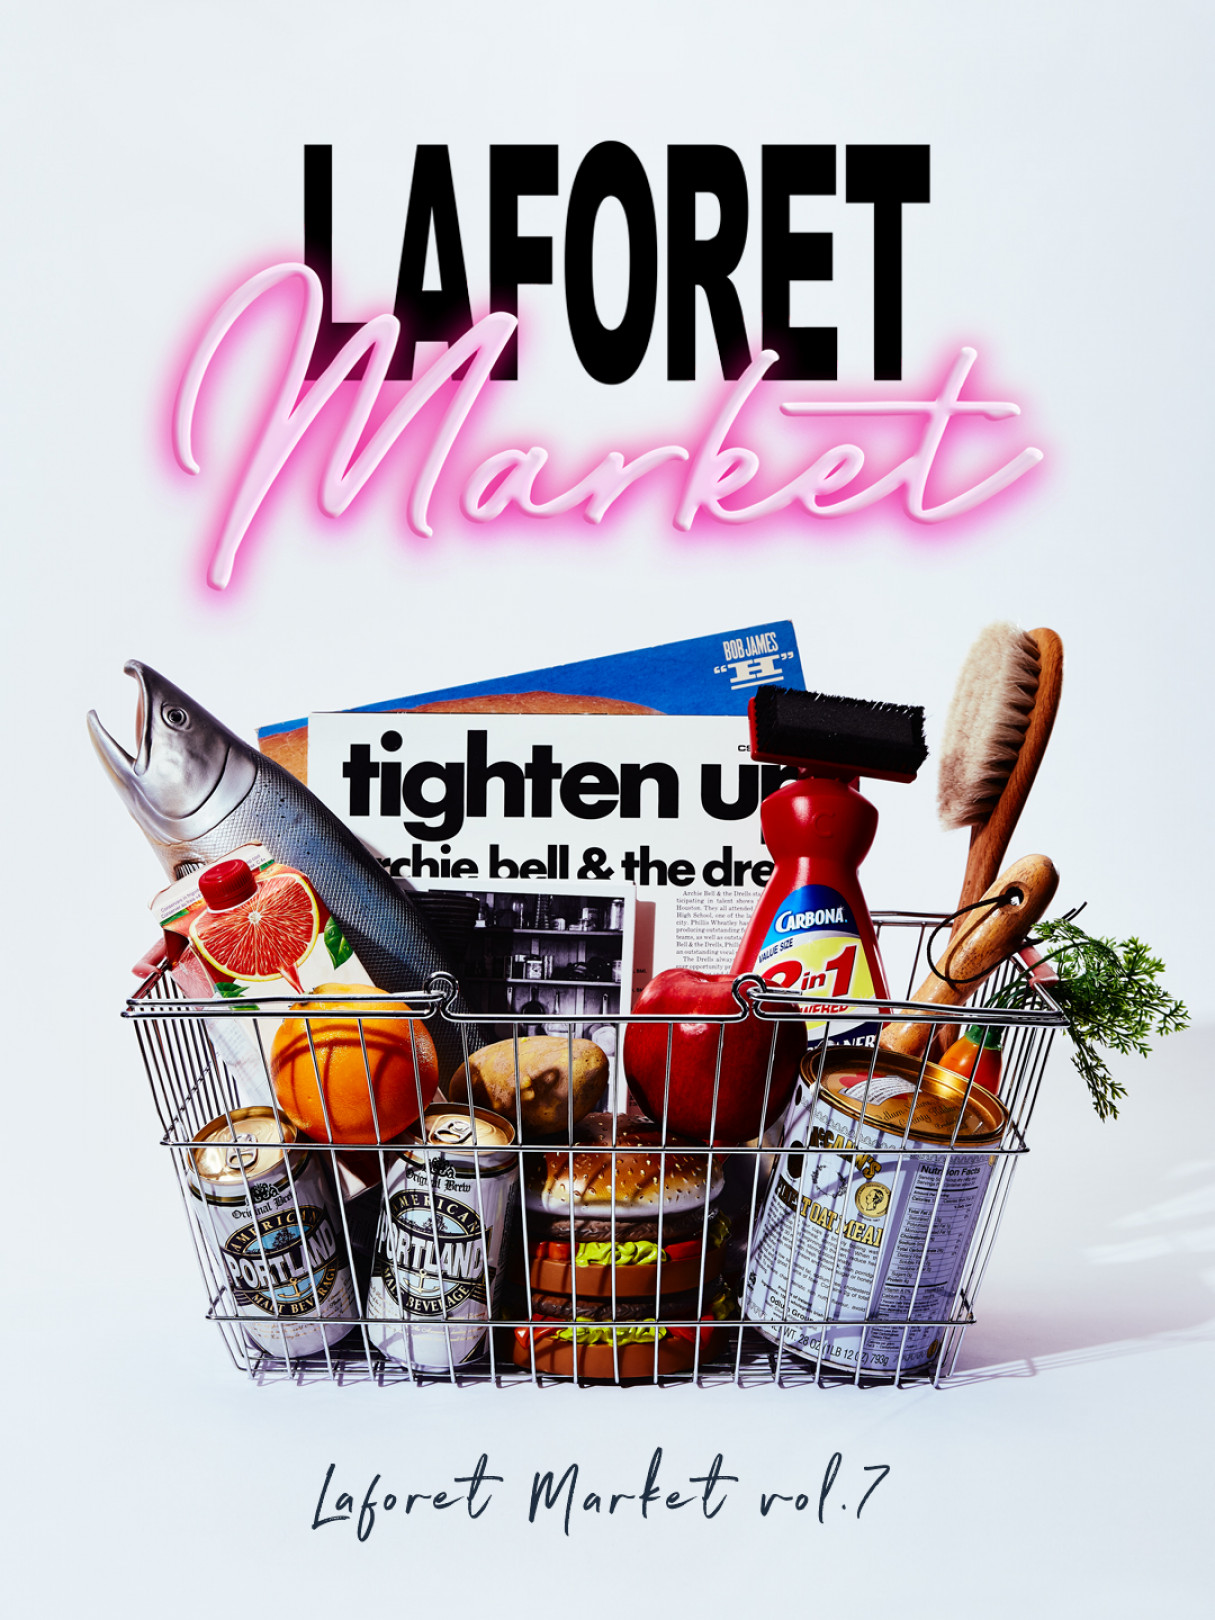 週末は家族でラフォーレ原宿に行こう! クリエイターと出会える新しいマーケット「Laforet Market vol.7」開催